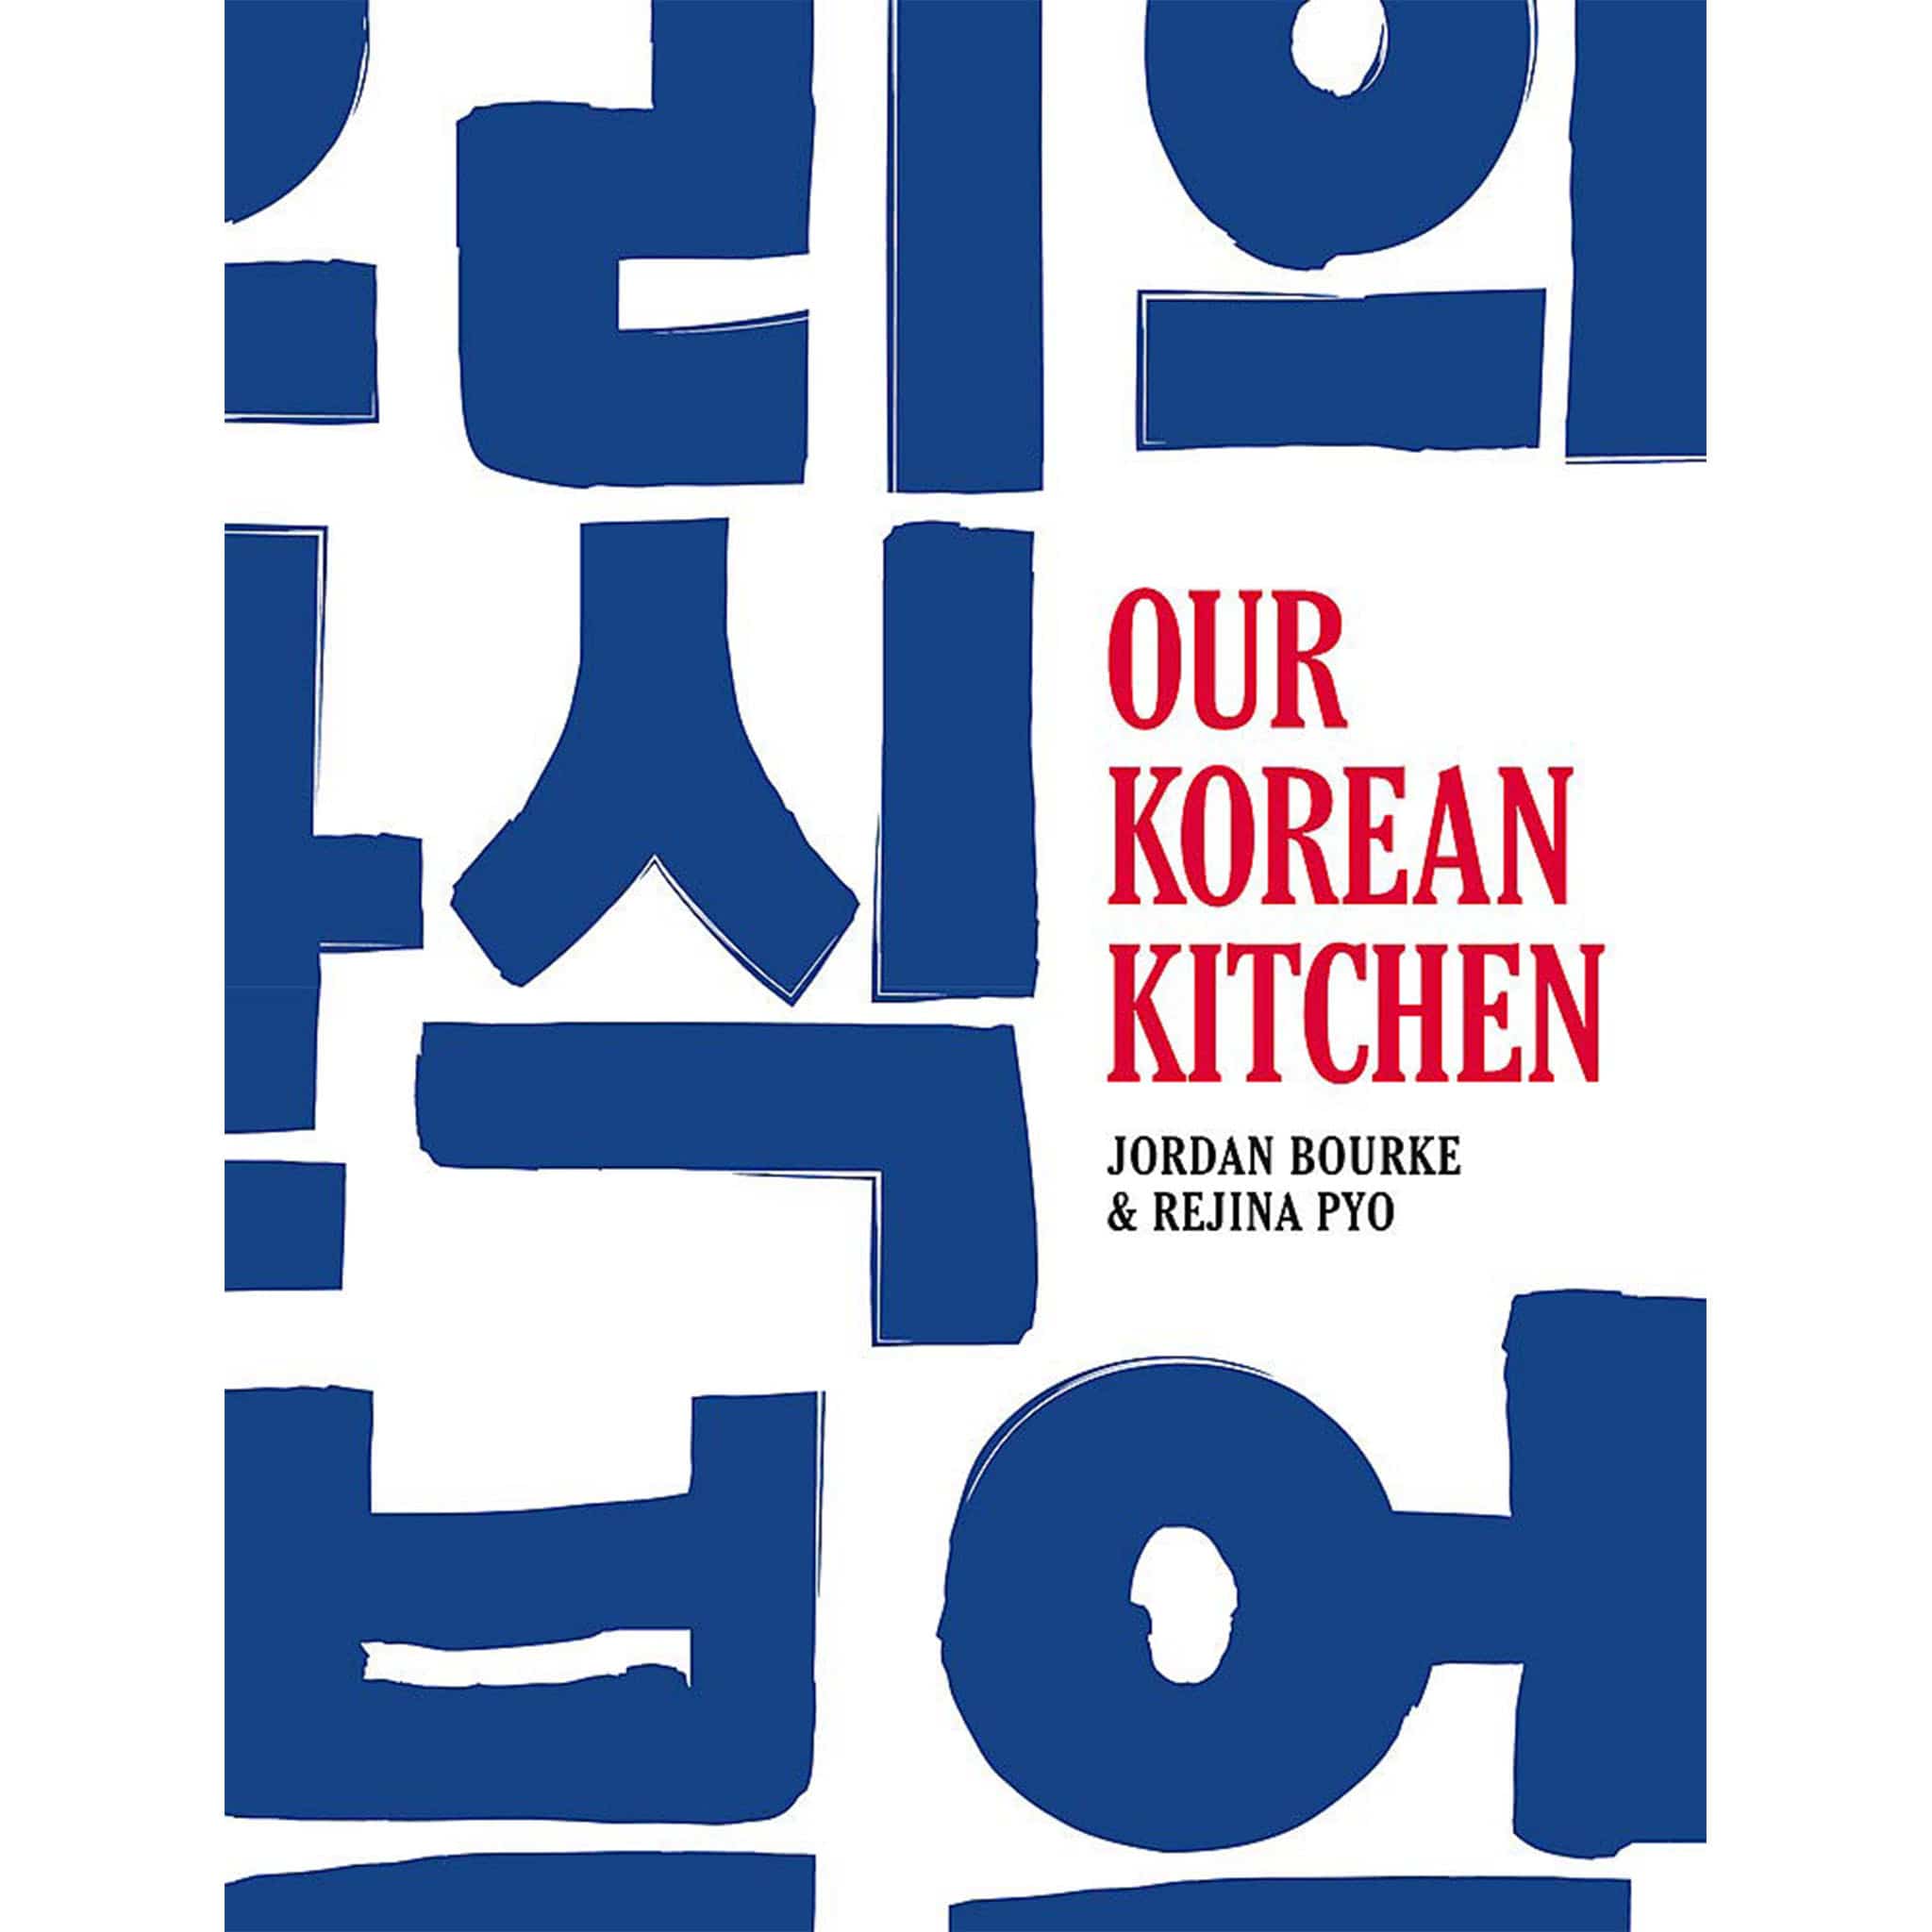 Our Korean Kitchen by Jordan Bourke & Rejina Pyo